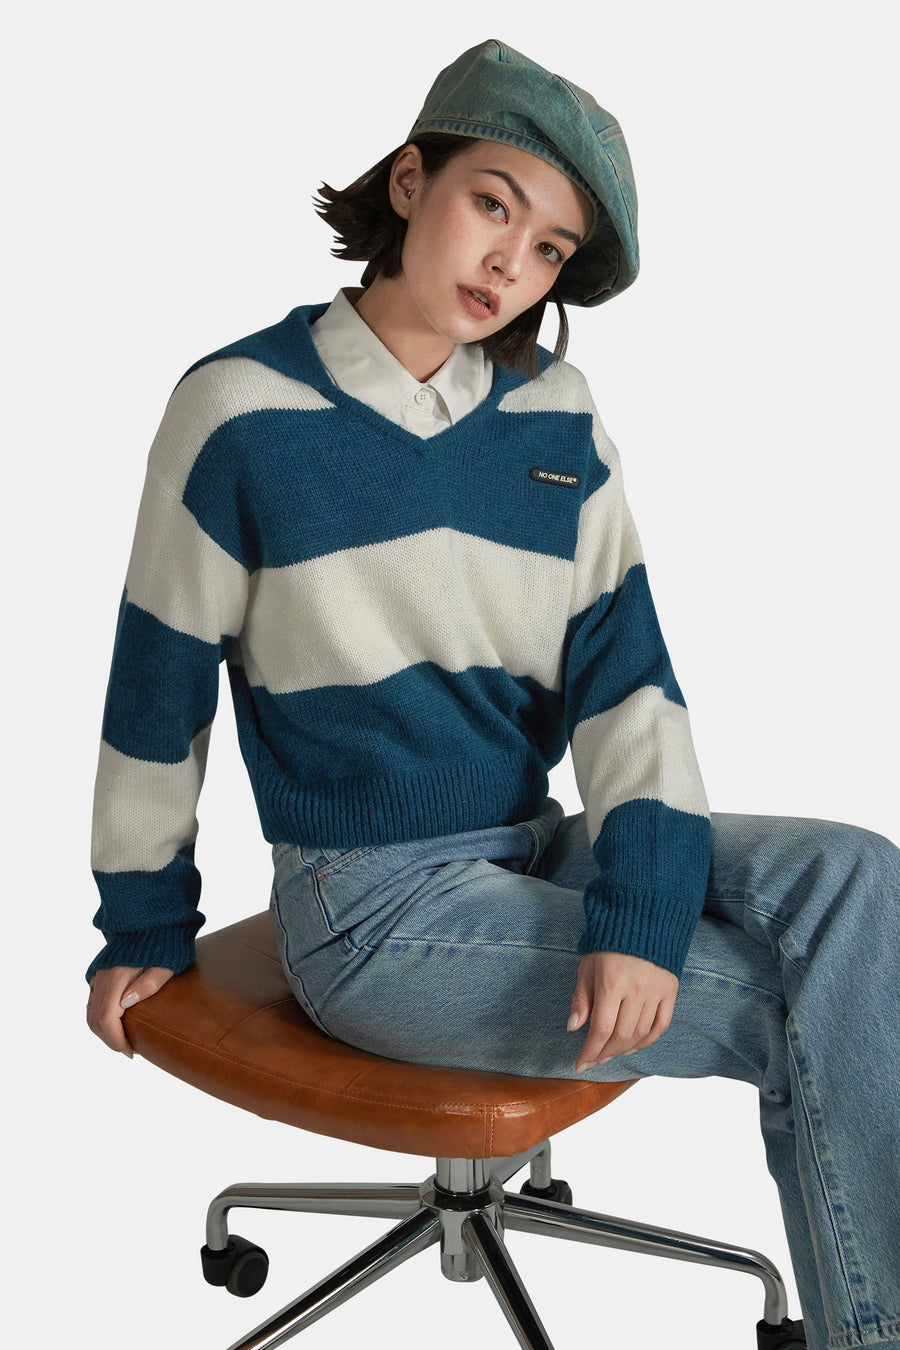 Sailor Color Scheme Knit Sweater